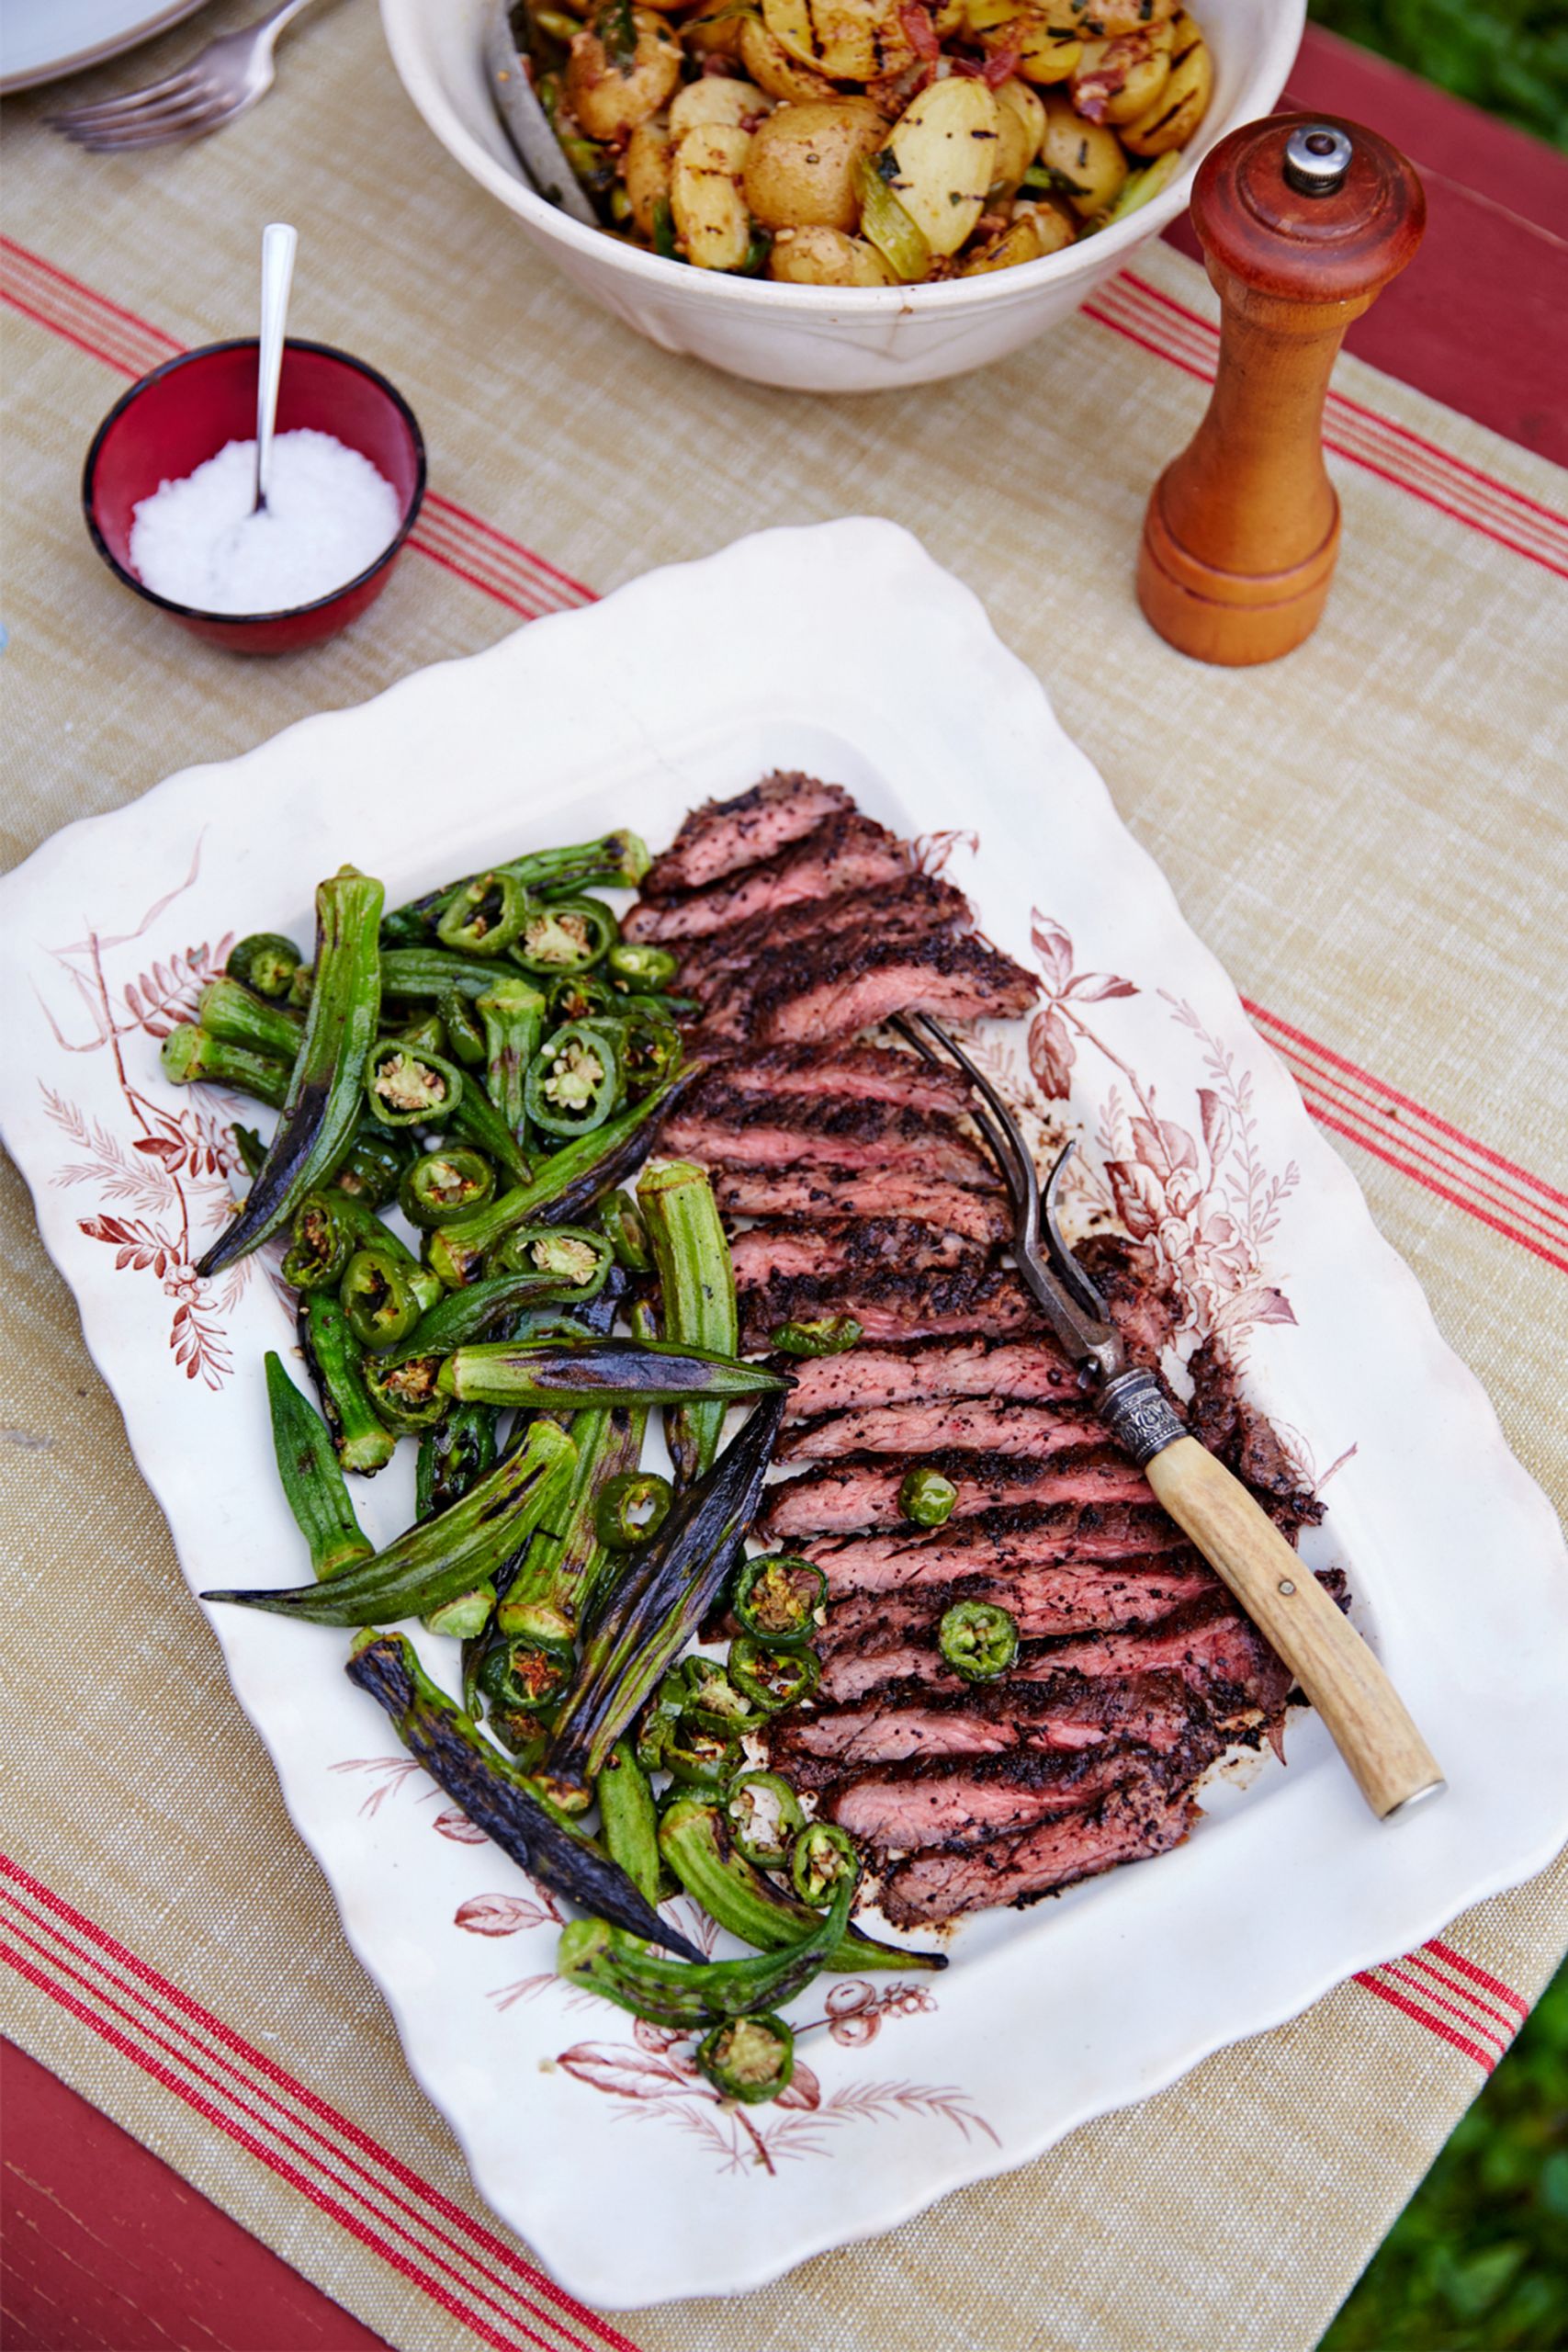 Steak Dinner Menu Ideas
 50 Best Summer Grilling Recipes & Ideas BBQ & Cookout